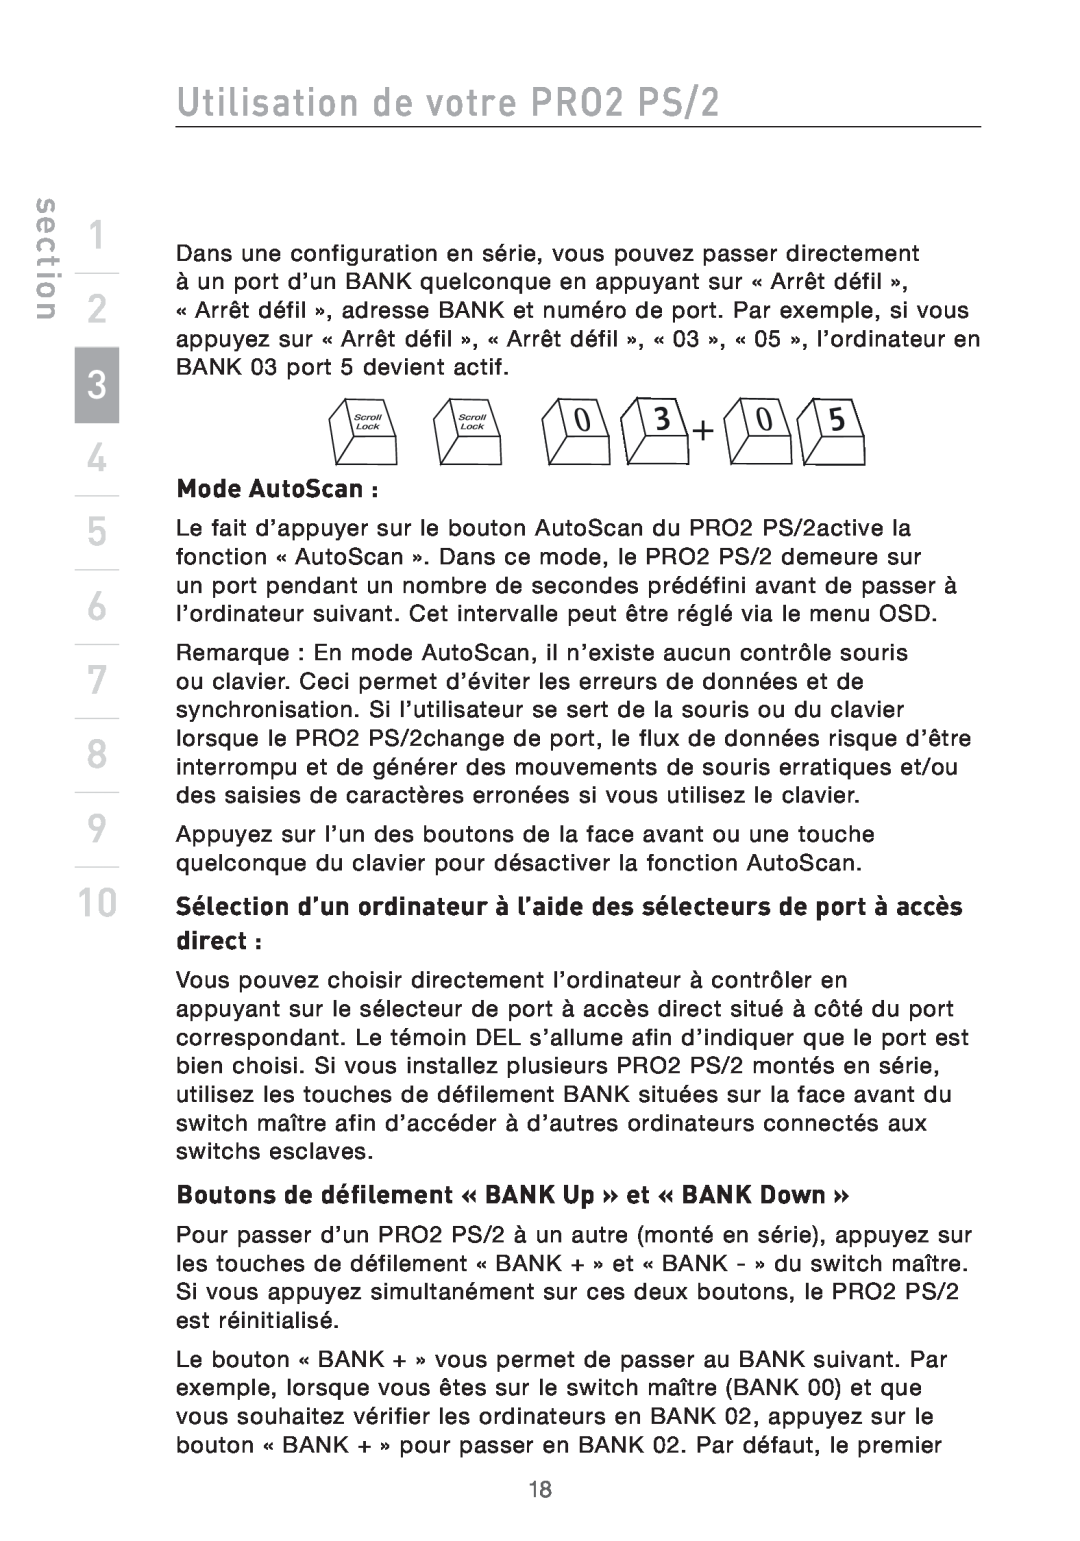 Belkin Mode AutoScan, Boutons de défilement « BANK Up » et « BANK Down », Utilisation de votre PRO2 PS/2, section 